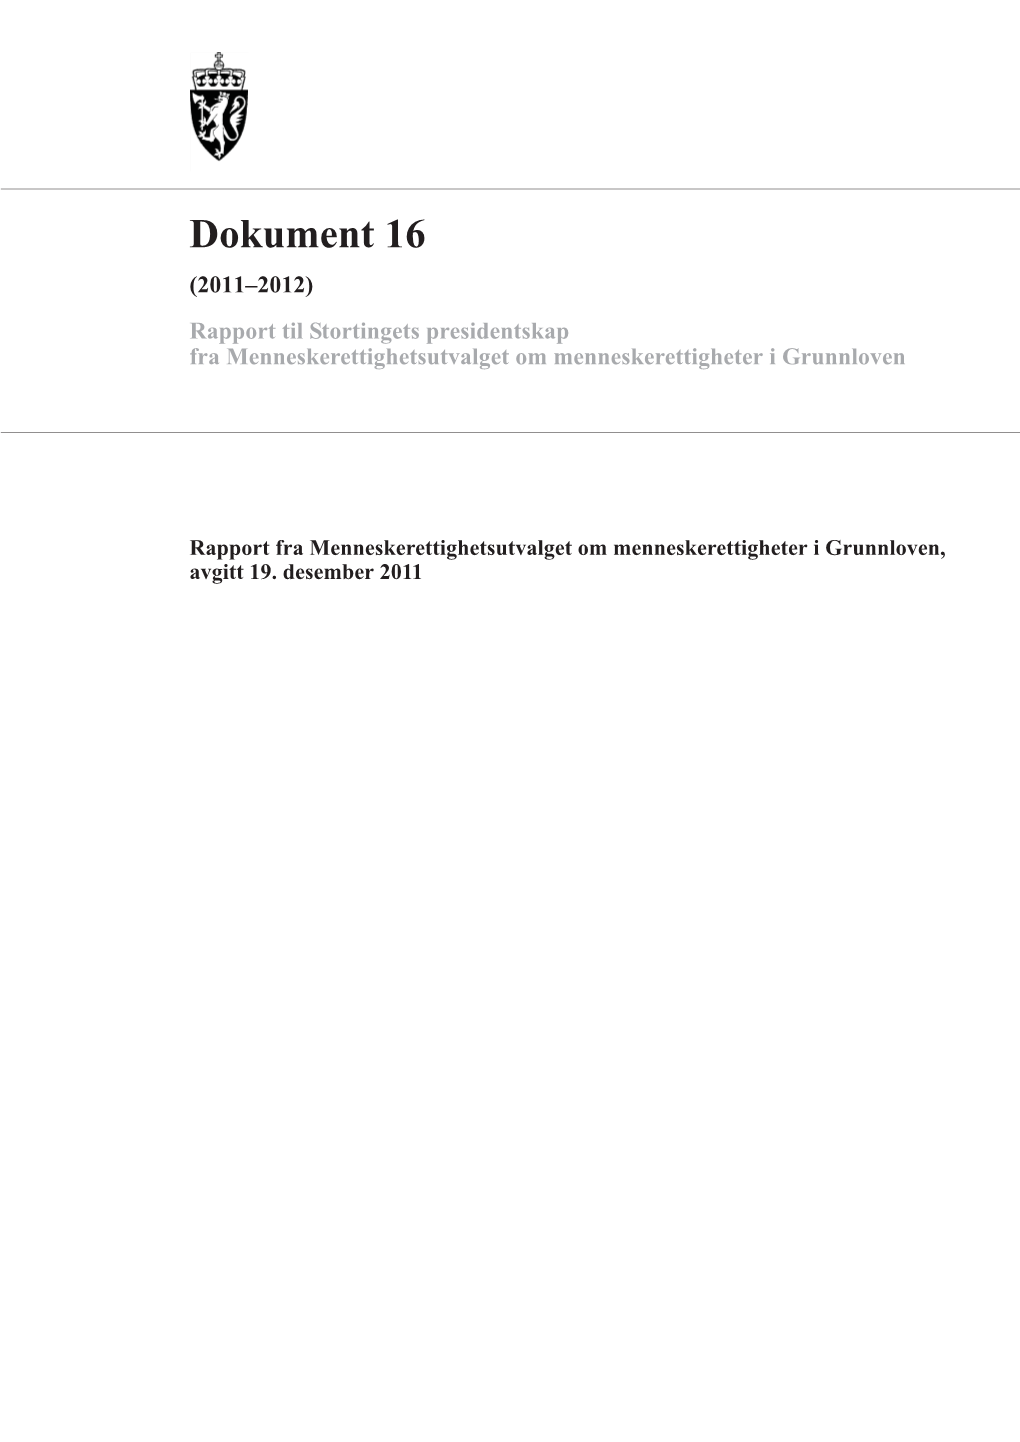 Dokument 16 (2011–2012) Rapport Til Stortingets Presidentskap Fra Menneskerettighetsutvalget Om Menneskerettigheter I Grunnloven